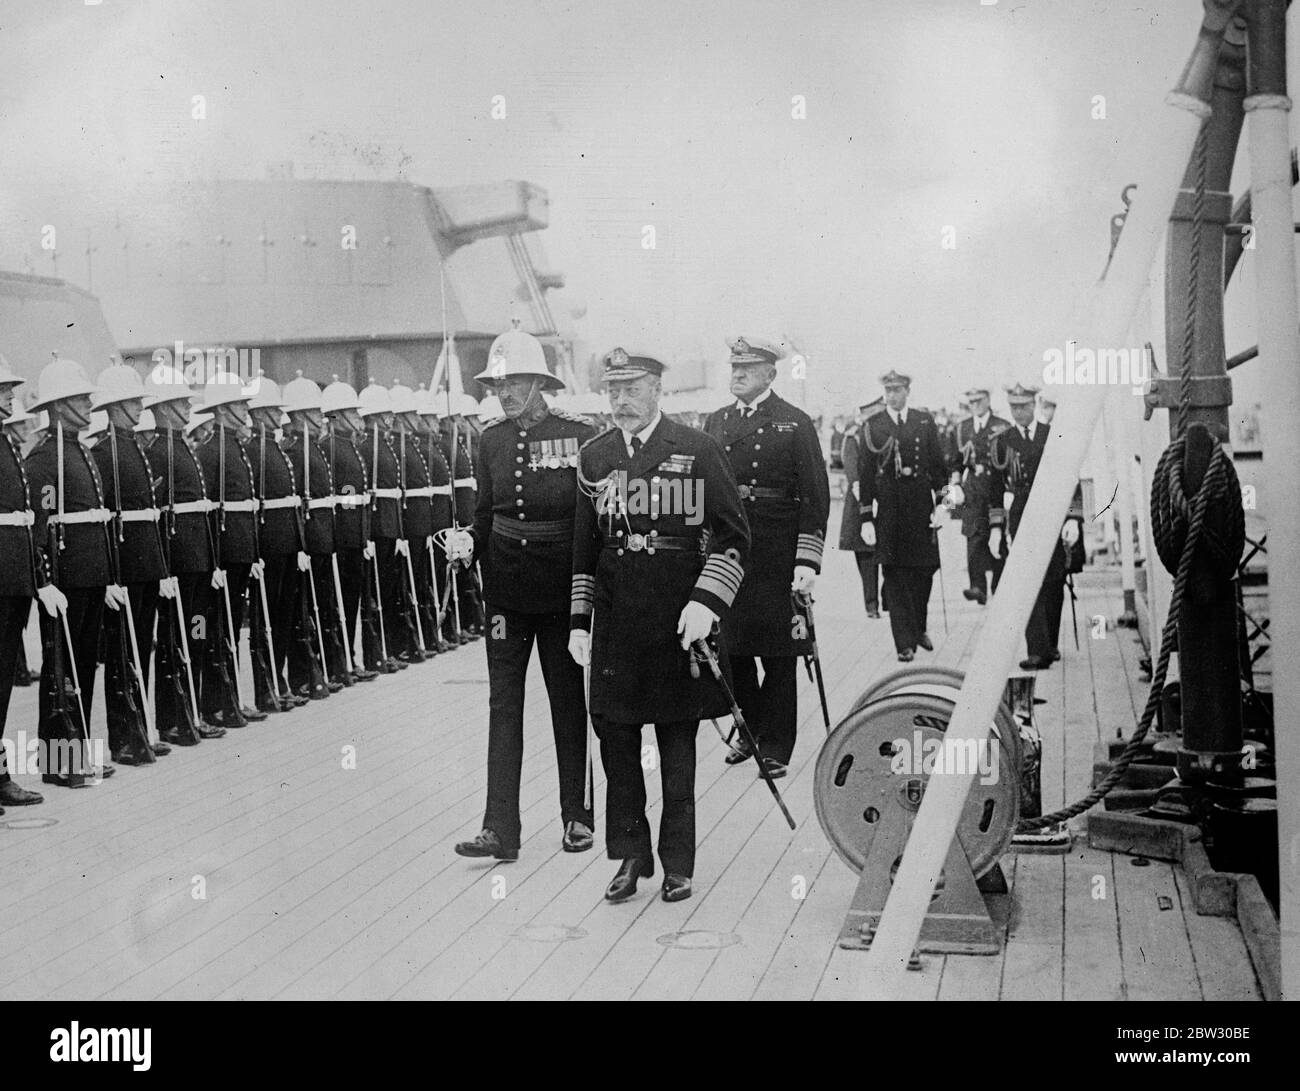 Re ispeziona i marines a bordo della HMS Nelson durante la visita alla flotta di Home a Weymouth . Il re che sta trascorrendo quattro giorni a bordo del suo yacht Victoria e Alber visitando la flotta al largo di Weymouth , accompagnato dal principe di Galles e il principe Giorgio ispezionarono i Royal Marines a bordo della HMS Nelson . Il re che ispeziona i marines a bordo della HMS Nelson sullo sfondo è il Principe di Galles e il Principe Giorgio . 12 luglio 1932 Foto Stock